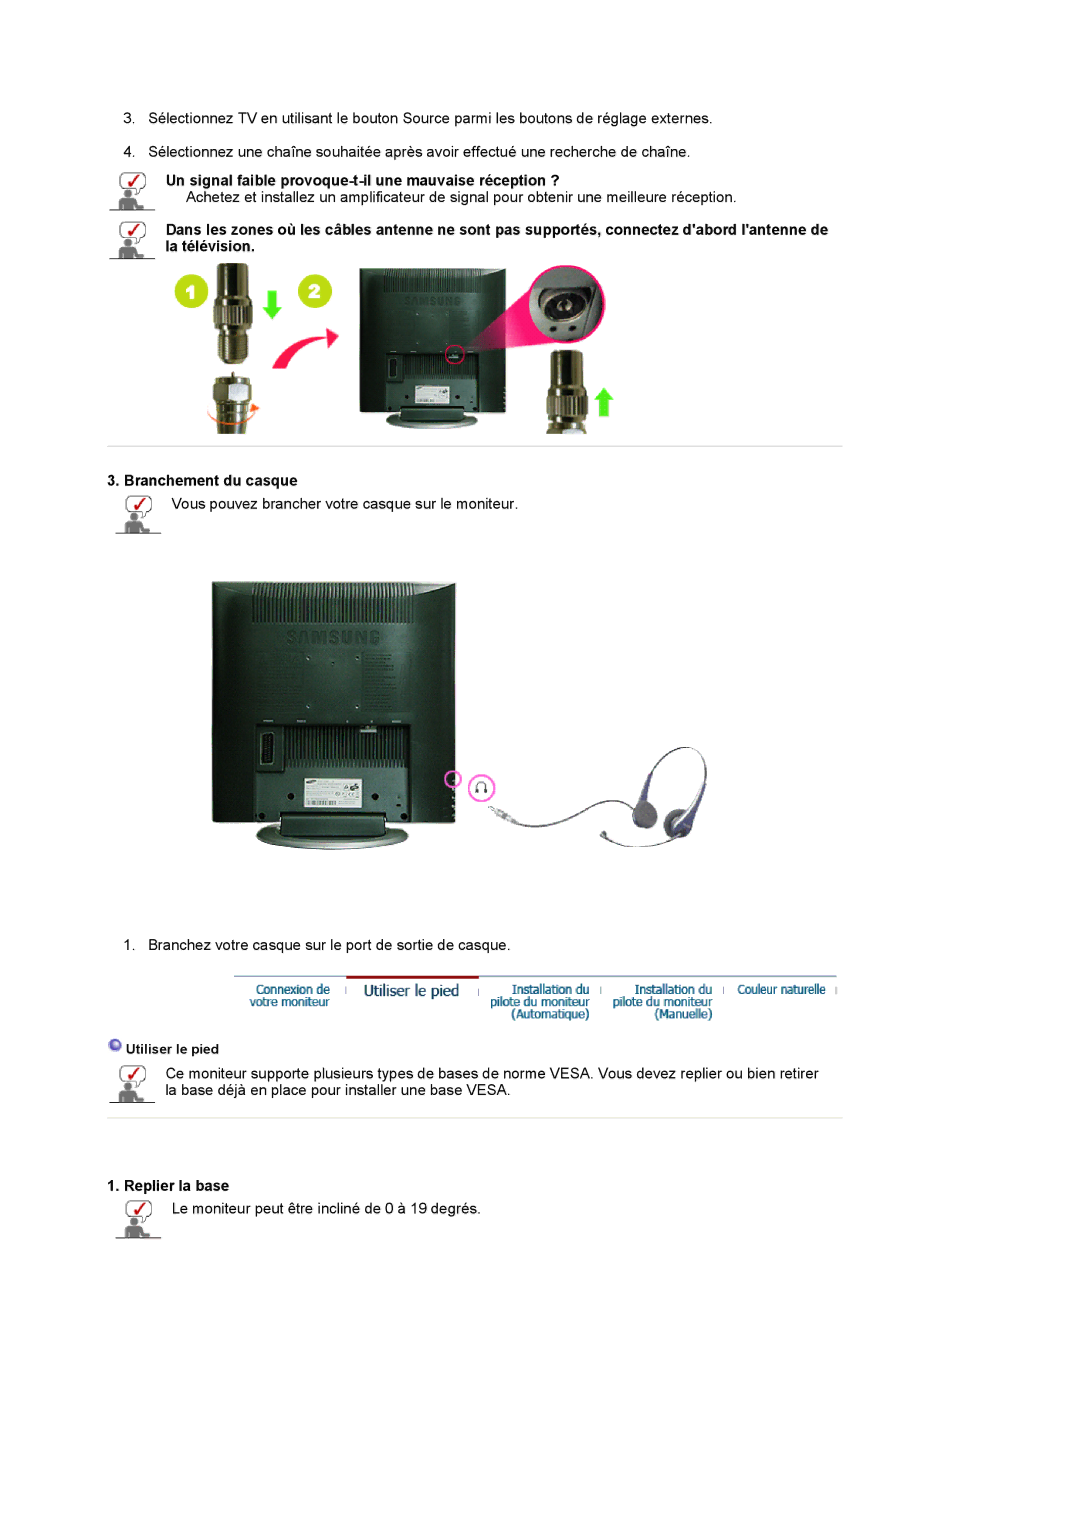 Samsung LS17MCASS/EDC manual Un signal faible provoque-t-il une mauvaise réception ?, Replier la base 